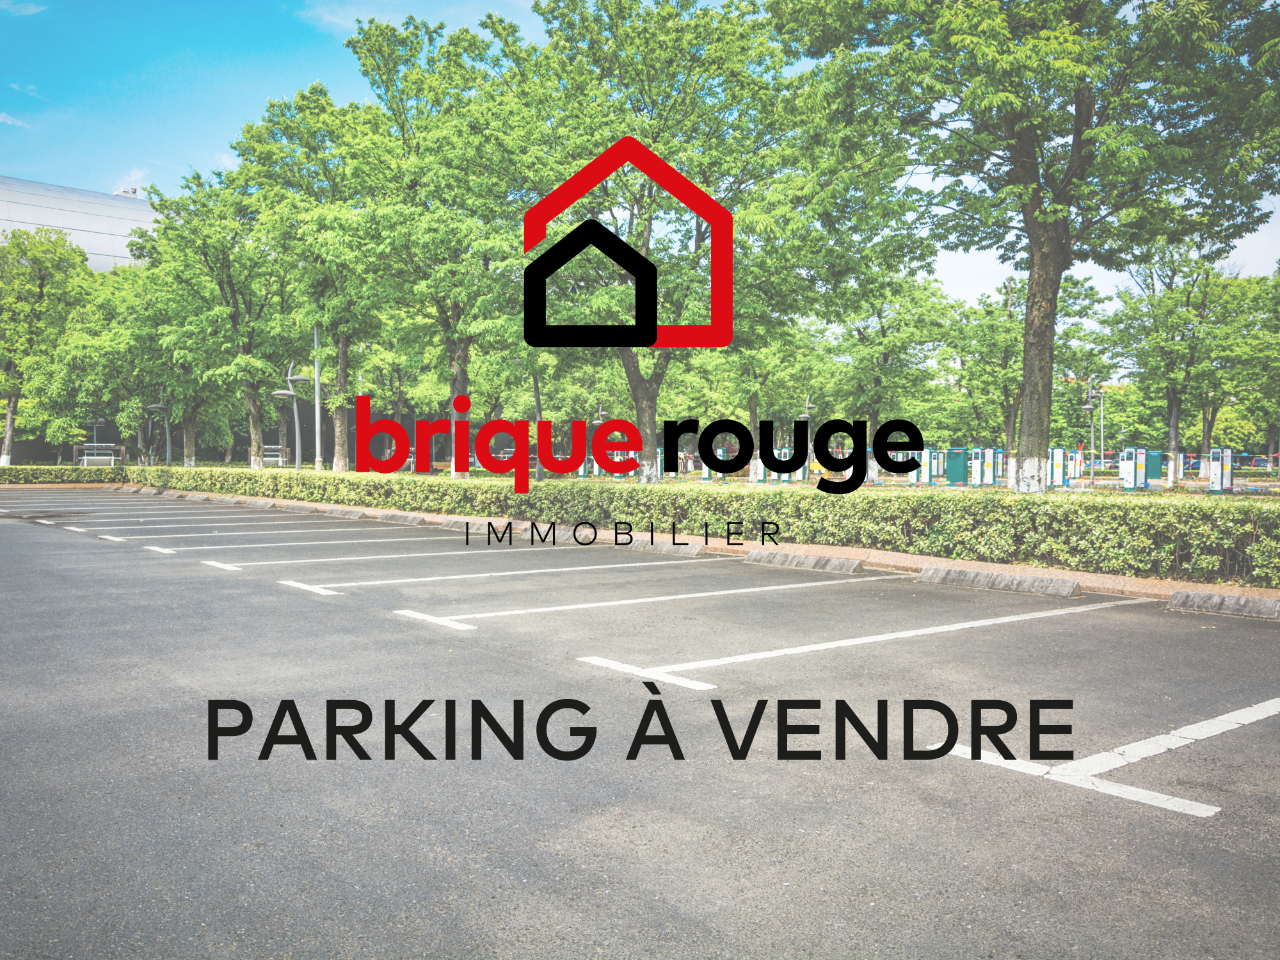 Vente parking 59280 Armentieres - Place de Parking sécurisée.